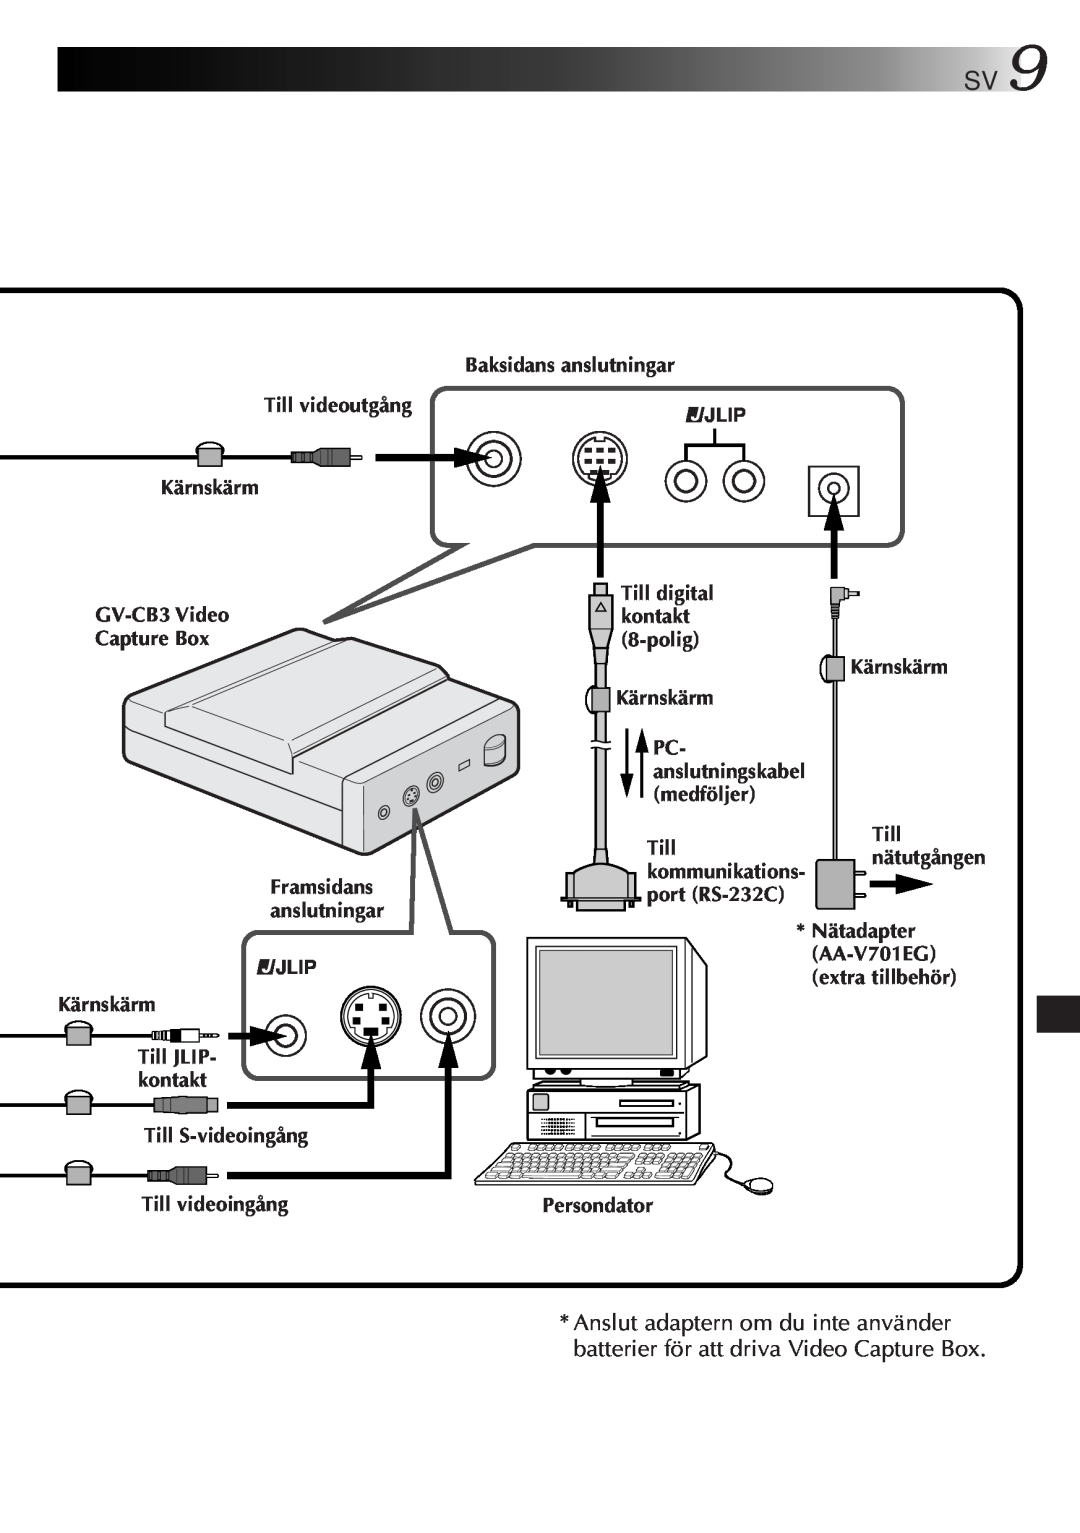 JVC GV-CB3E manual Jlip, Framsidans anslutningar, PC- anslutningskabel medföljer, Till kommunikations- port RS-232C 